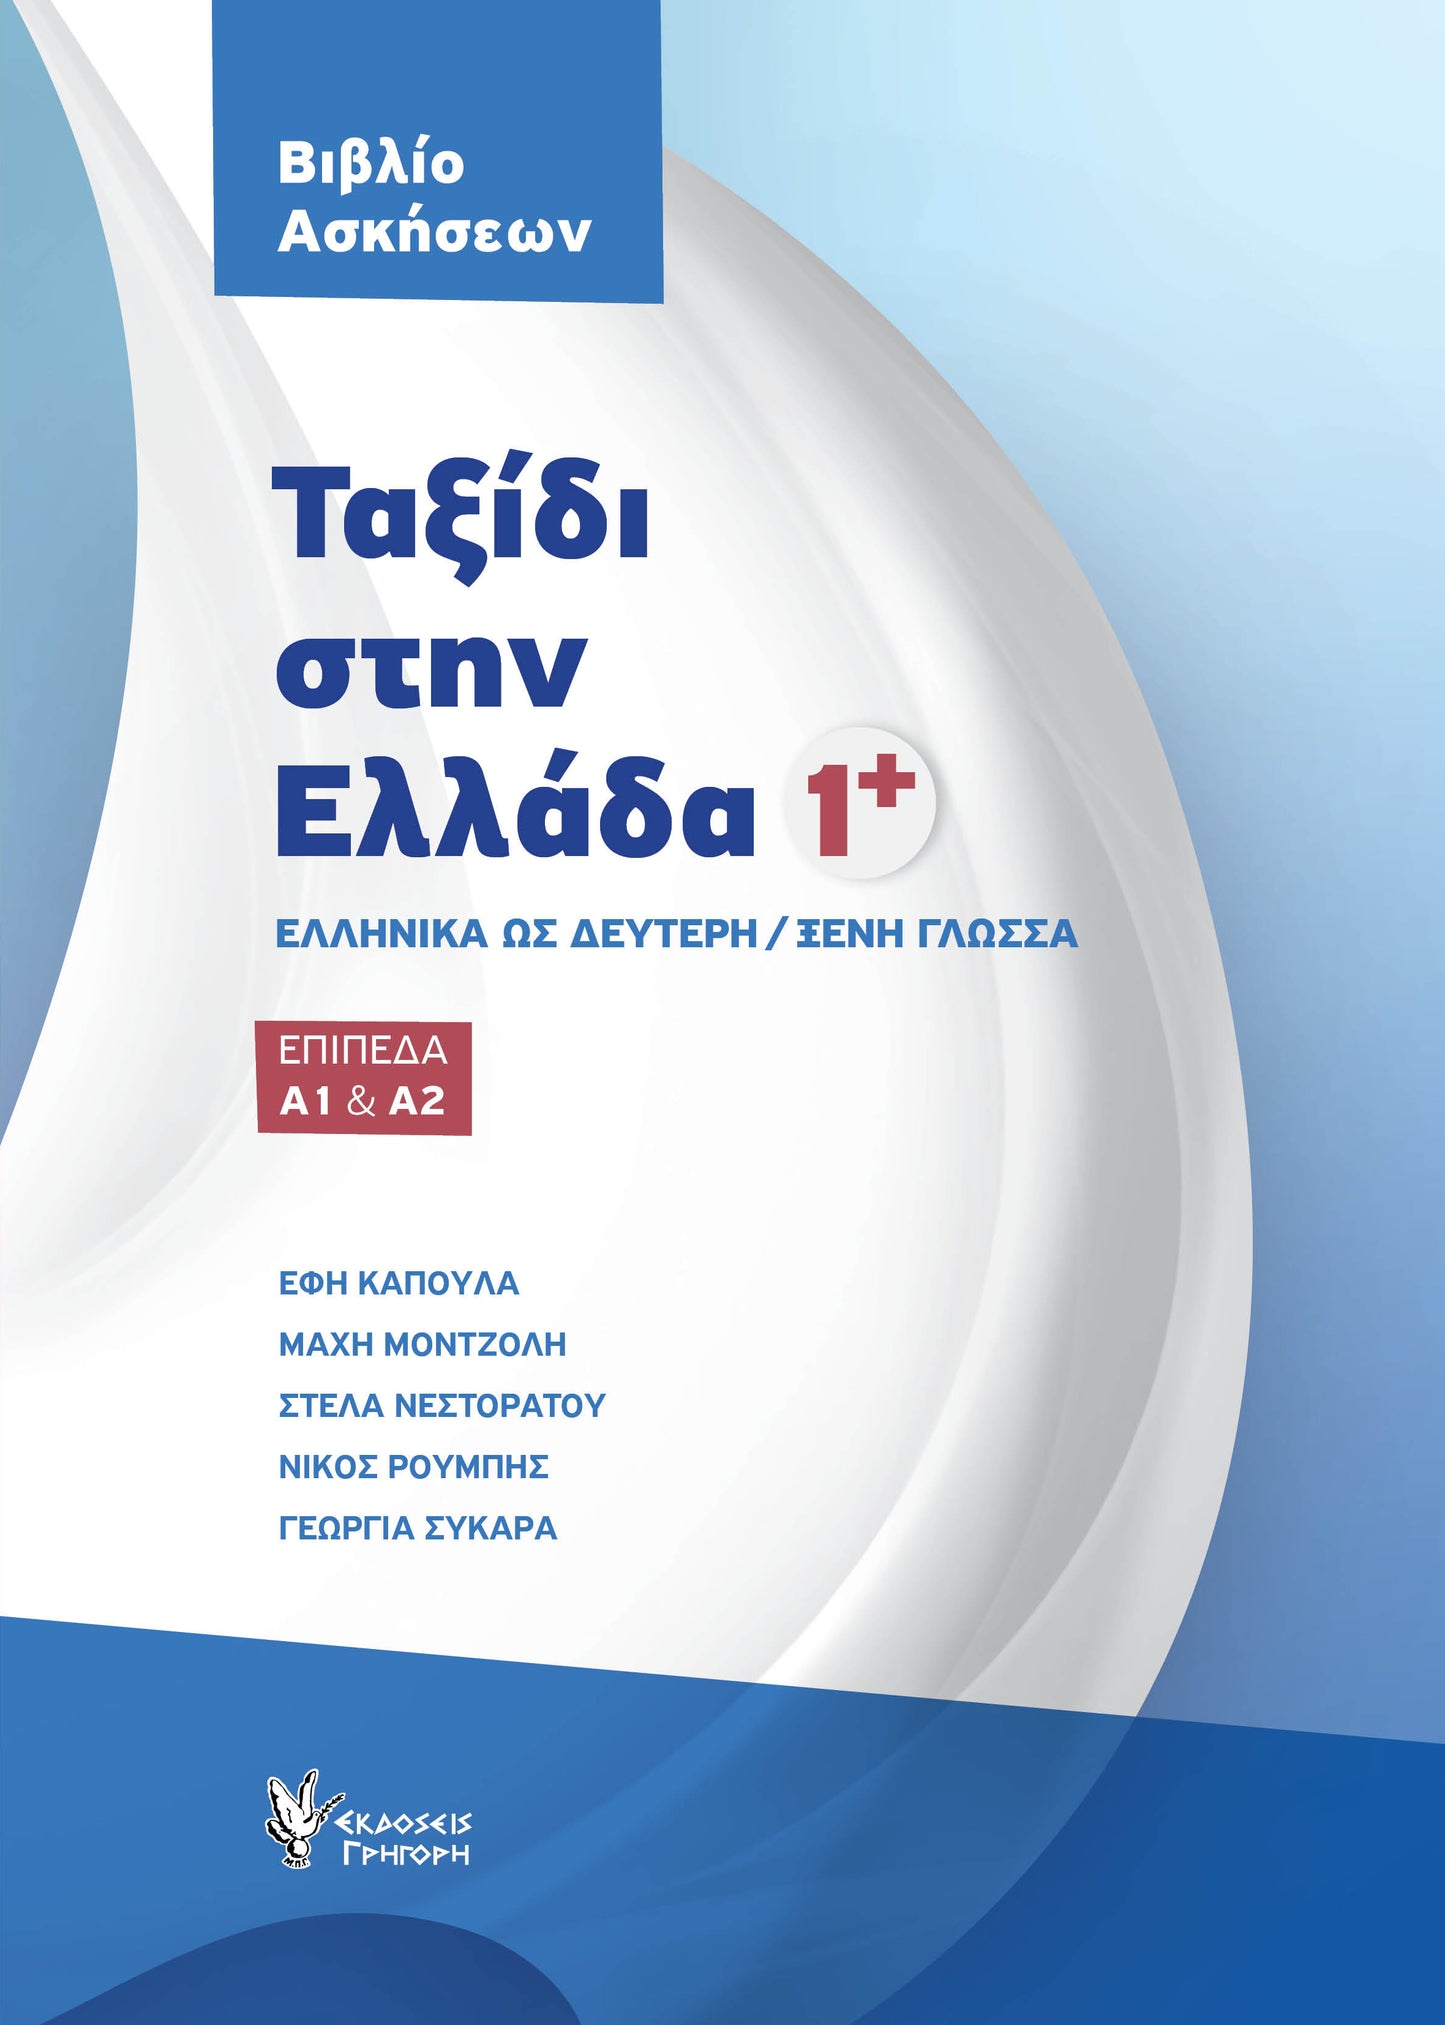 Ταξίδι στην Ελλάδα Νο.1 (Επίπεδα Α1 & Α2) Βιβλίο Ασκήσεων